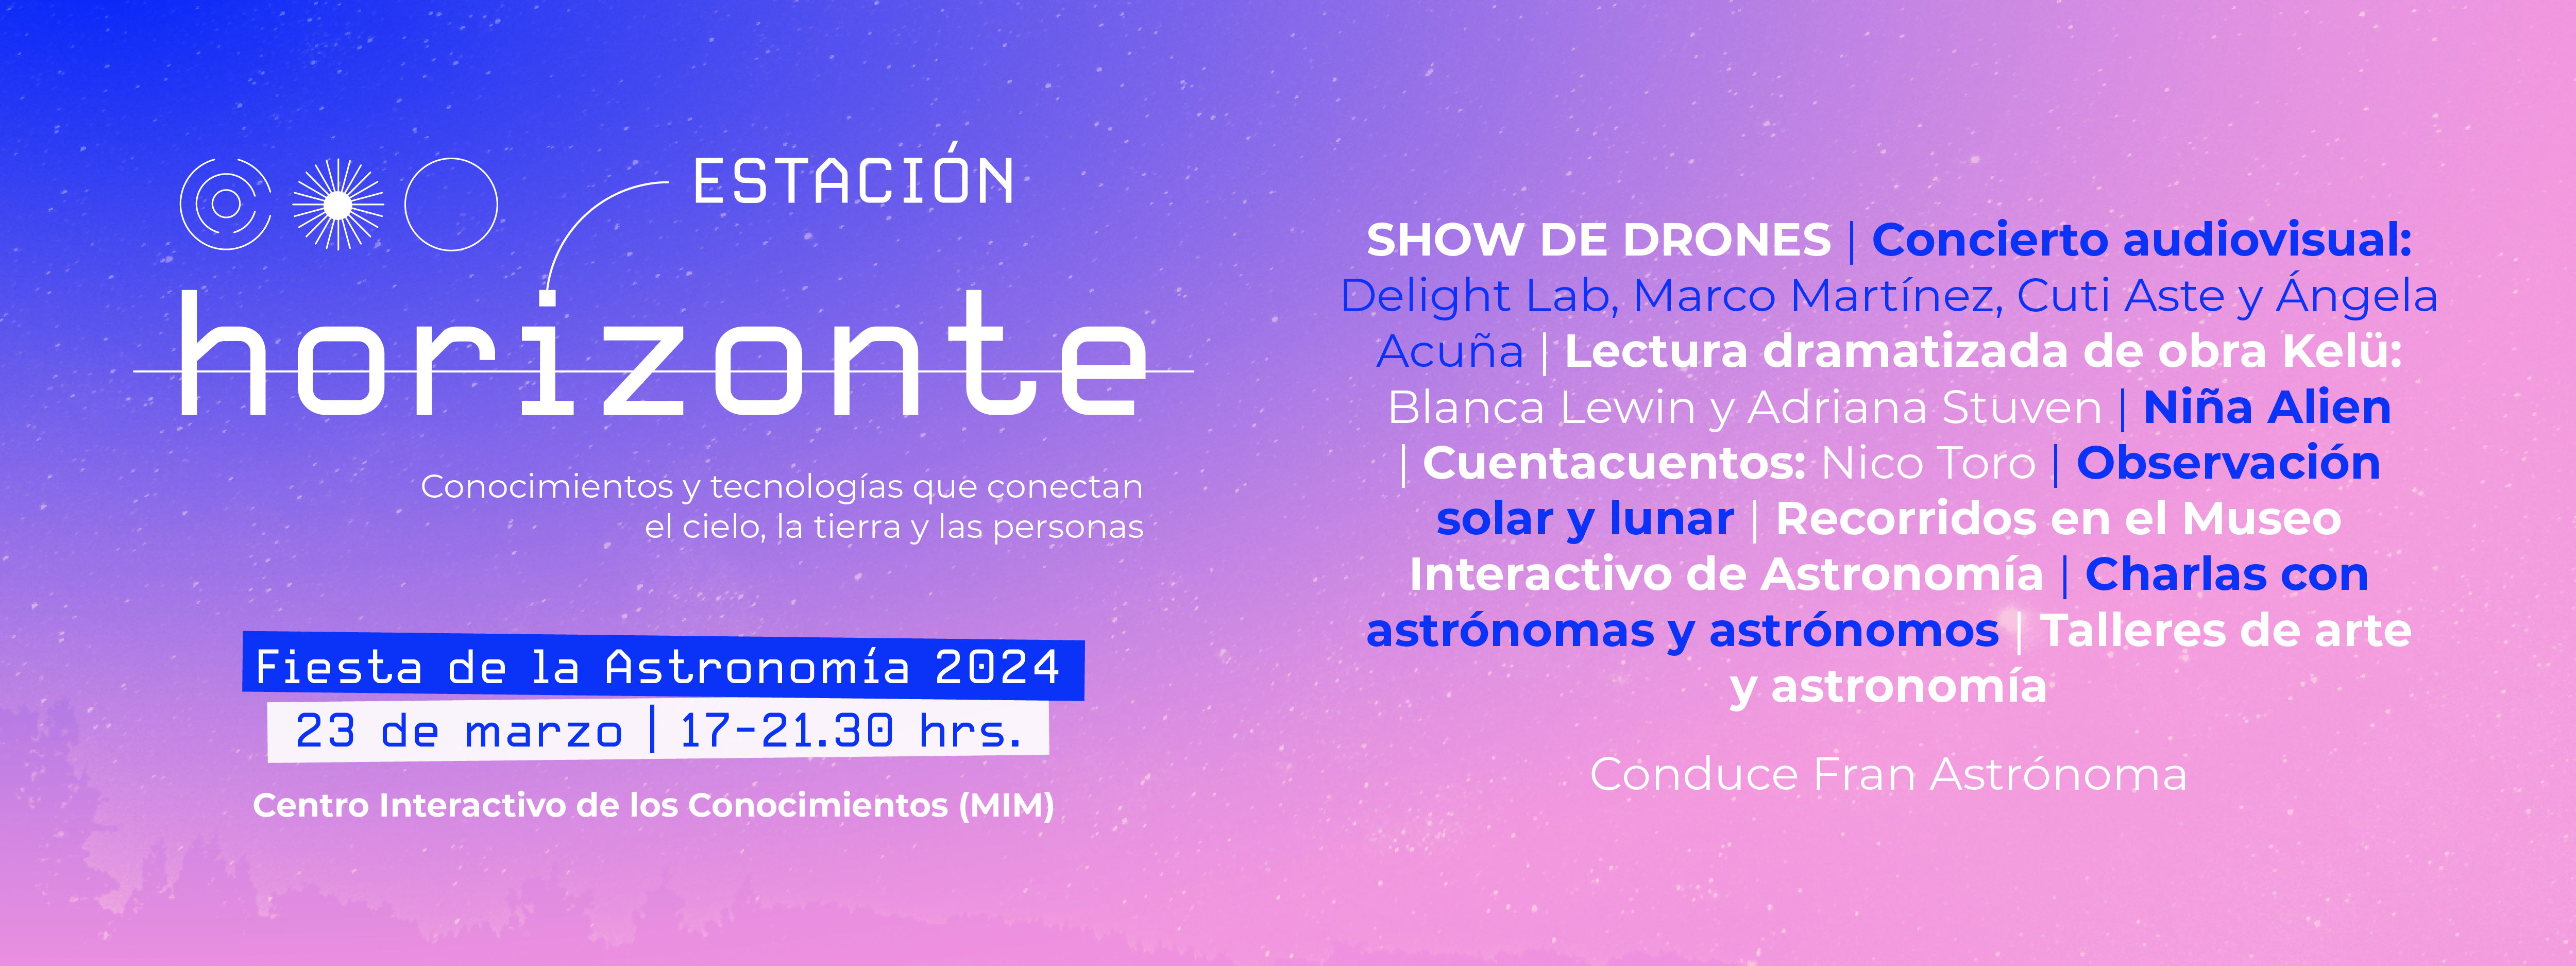 Fiesta de la astronomía: Estación Horizonte